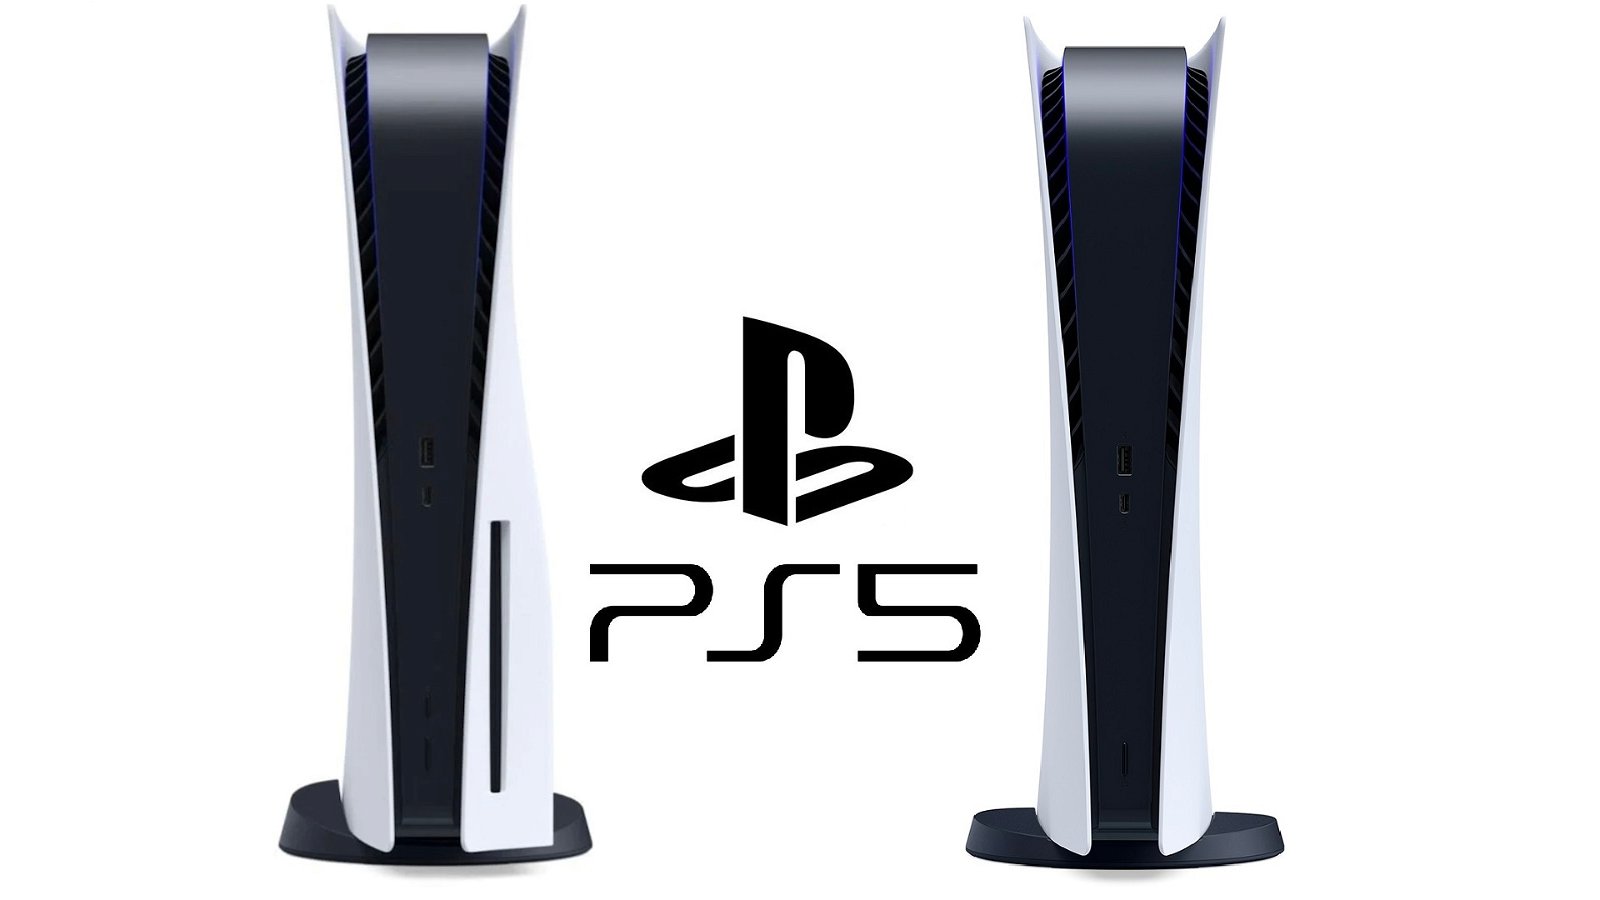 PS5 tendría un nuevo modelo en desarrollo que combinaría la consola con lector de disco y la digital